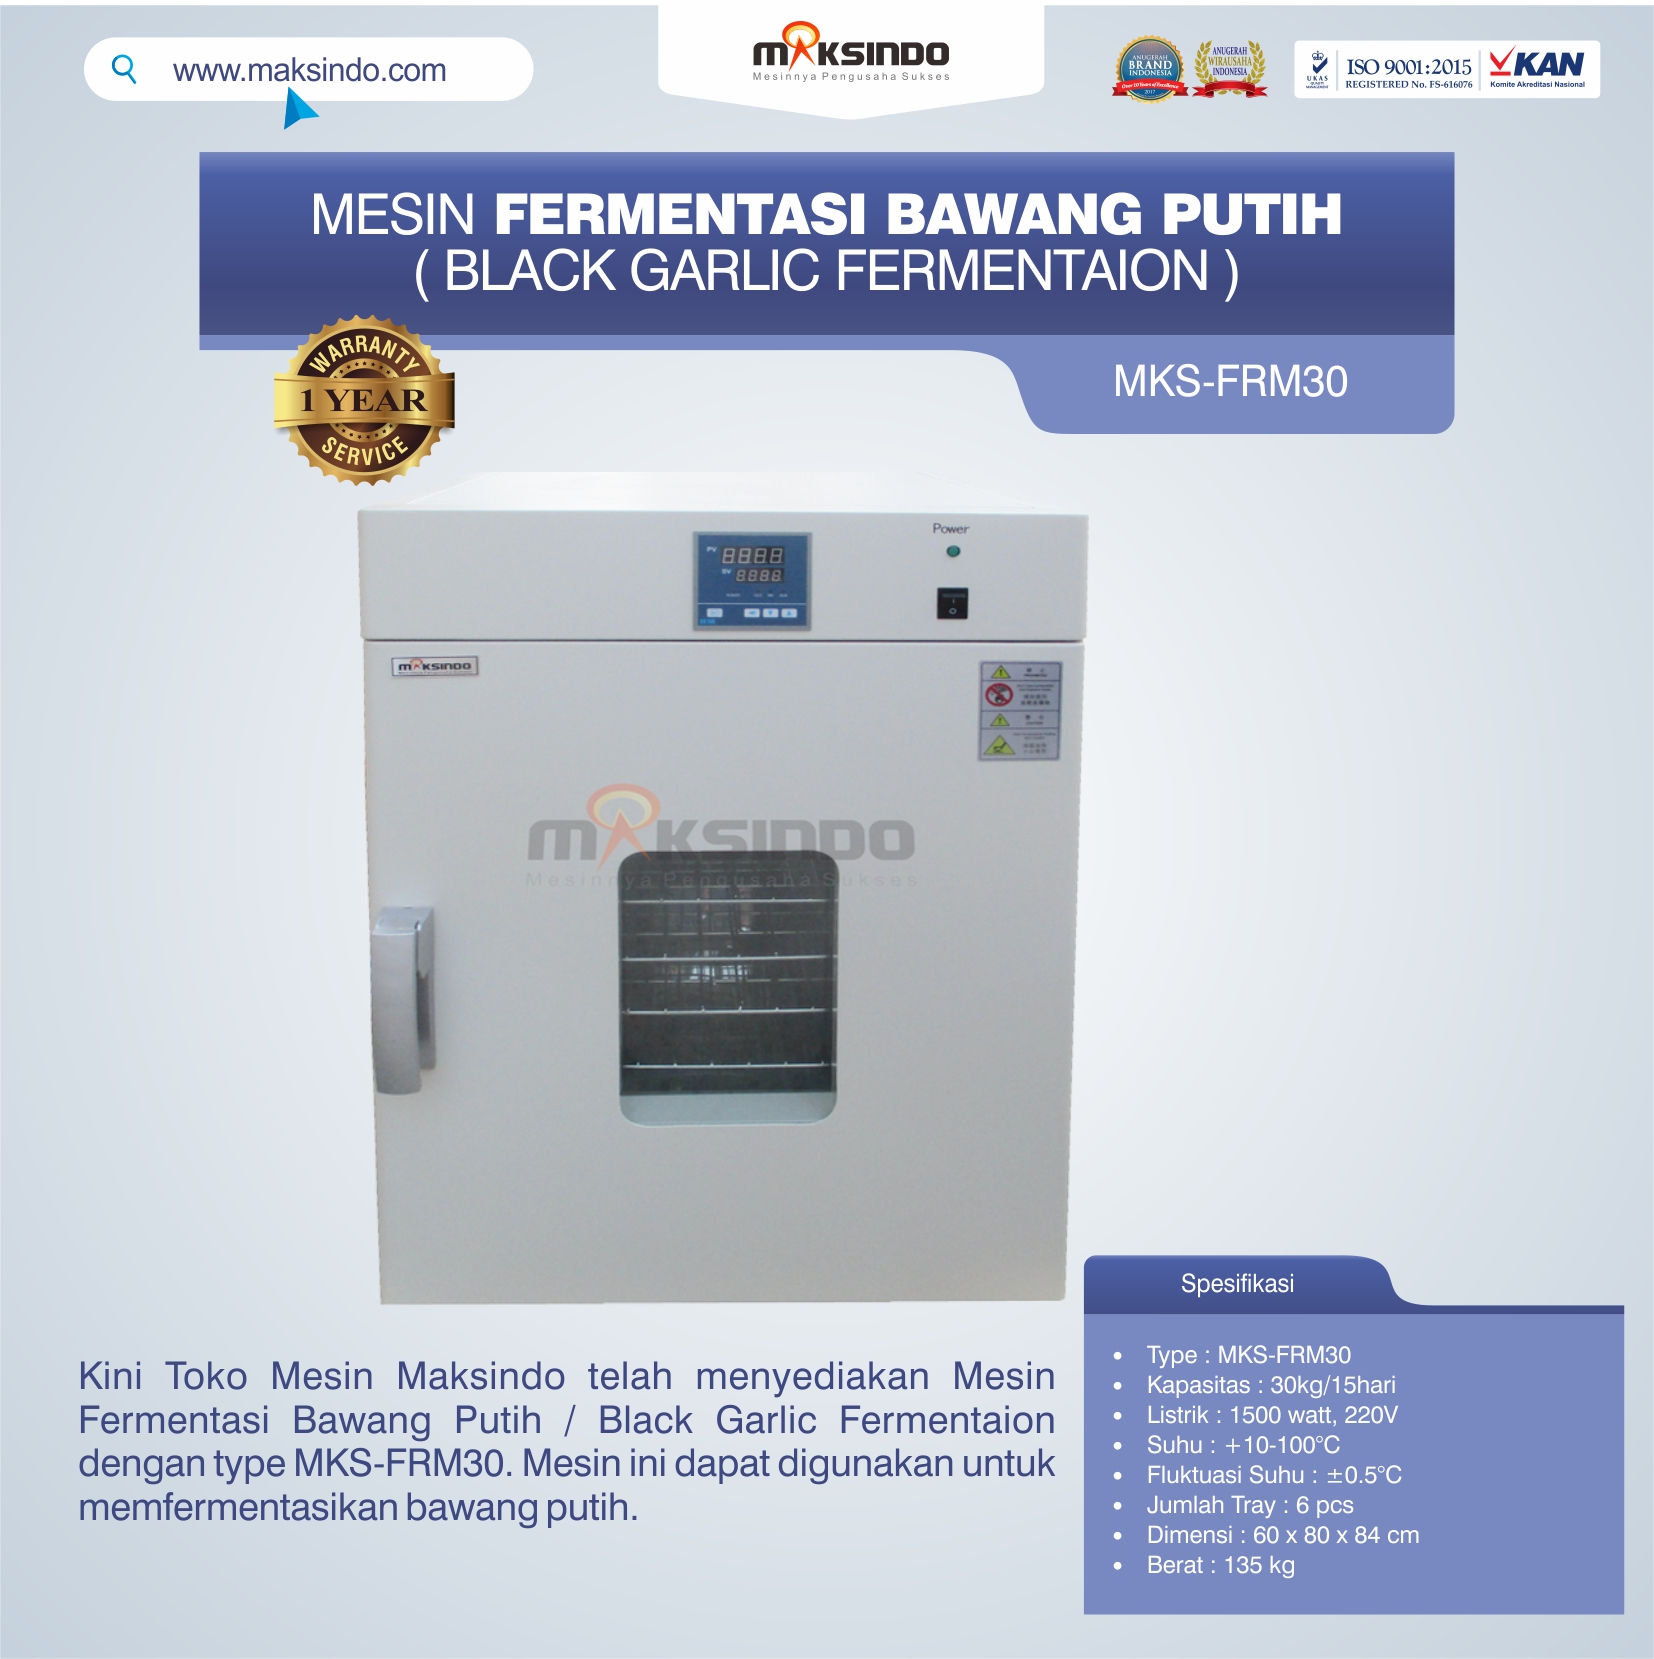 Jual Mesin Fermentasi Bawang Putih / Black Garlic Fermentaion MKS-FRM30 di Semarang